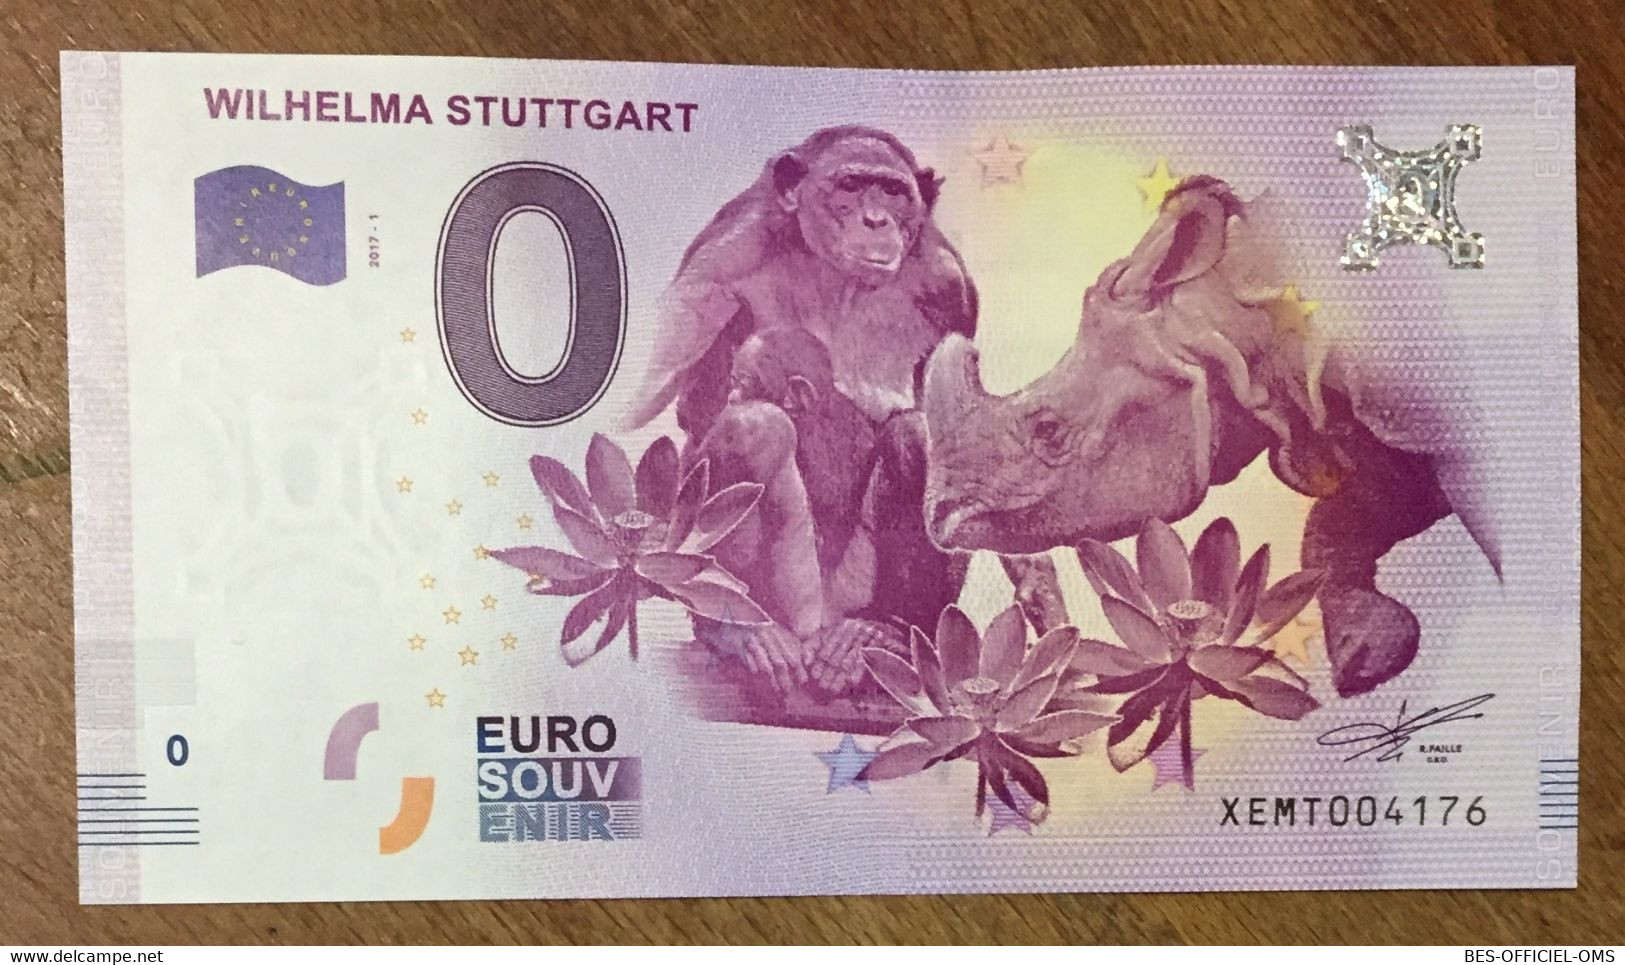 2017 BILLET 0 EURO SOUVENIR ALLEMAGNE DEUTSCHLAND WILHELMA STUTTGART ZERO 0 EURO SCHEIN BANKNOTE PAPER MONEY - Specimen